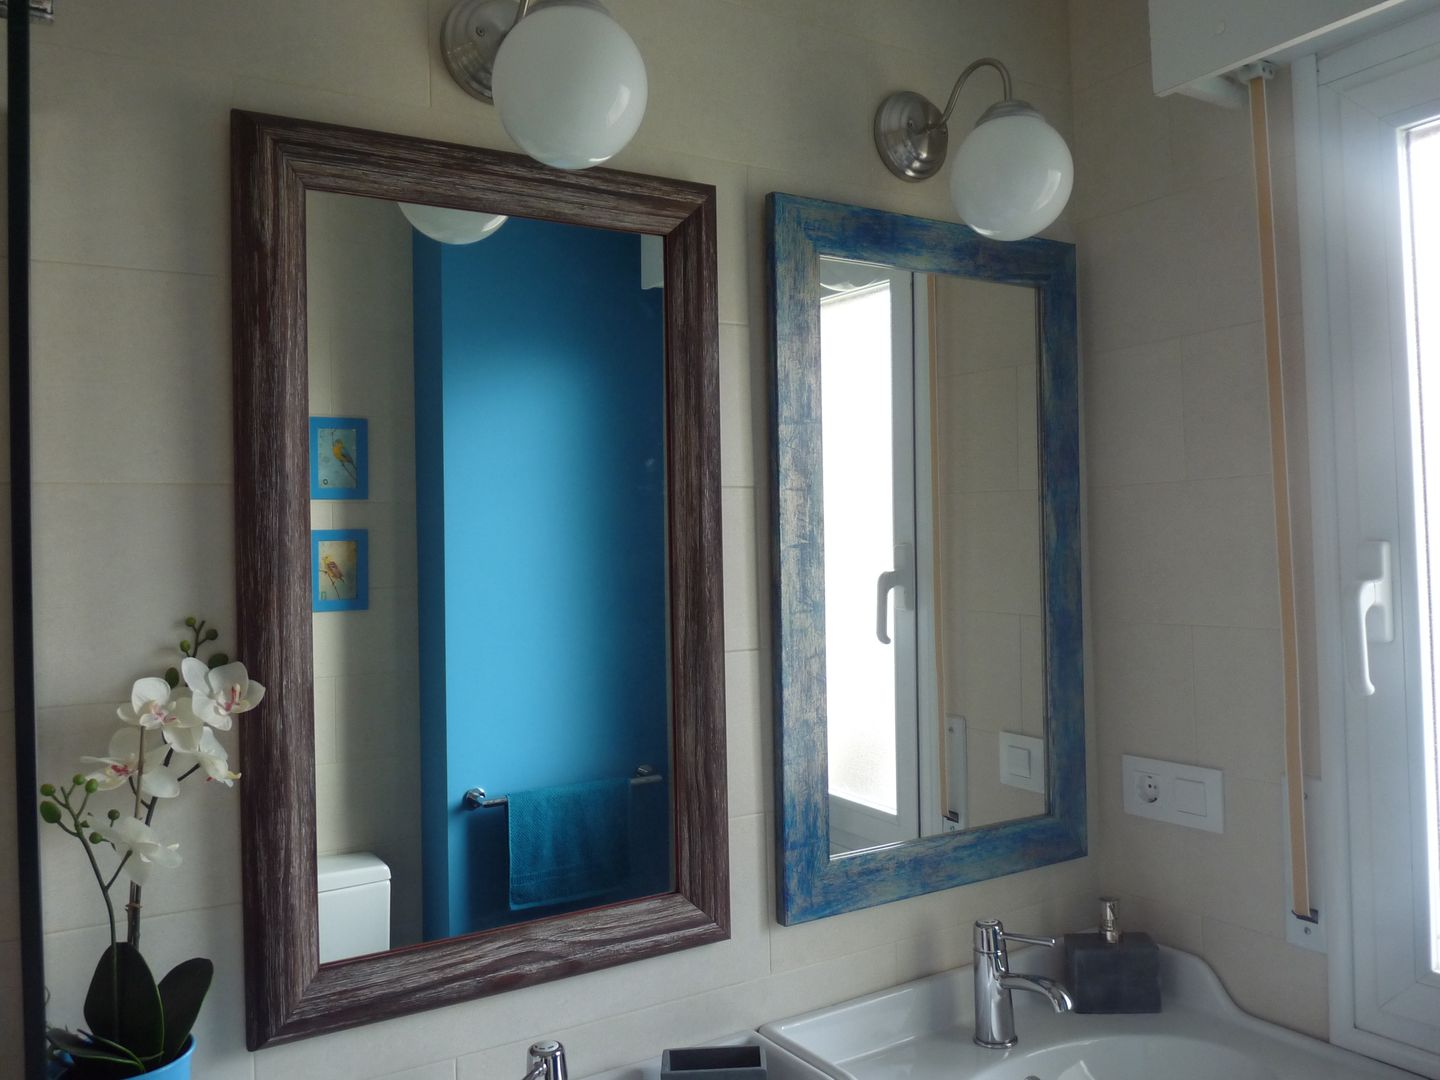 Reforma de baño: azul turquesa y baldosas impresas de mosaico hidráulico, Dec&You Dec&You حمام